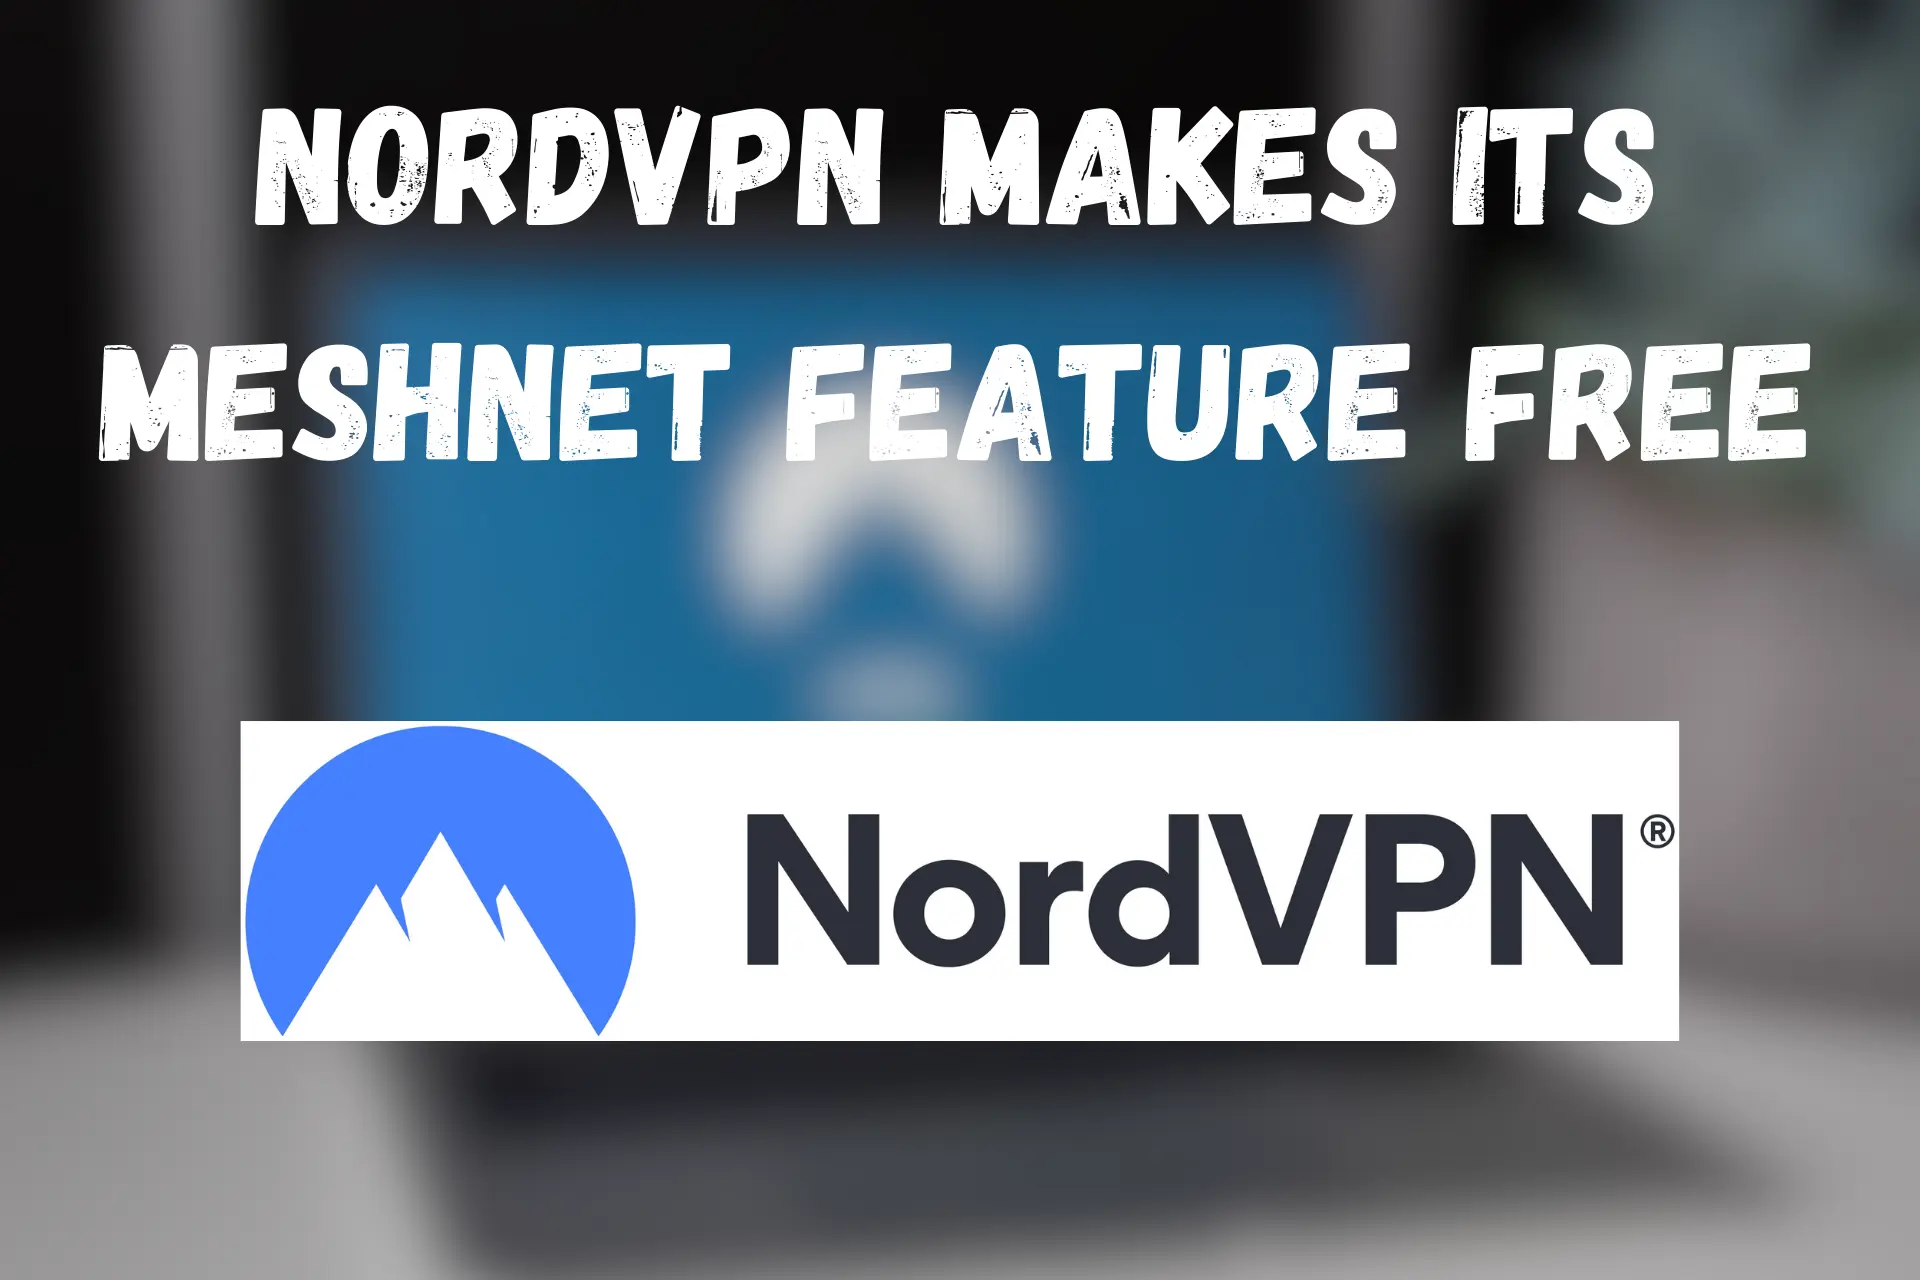 NordVPN makes Meshnet free